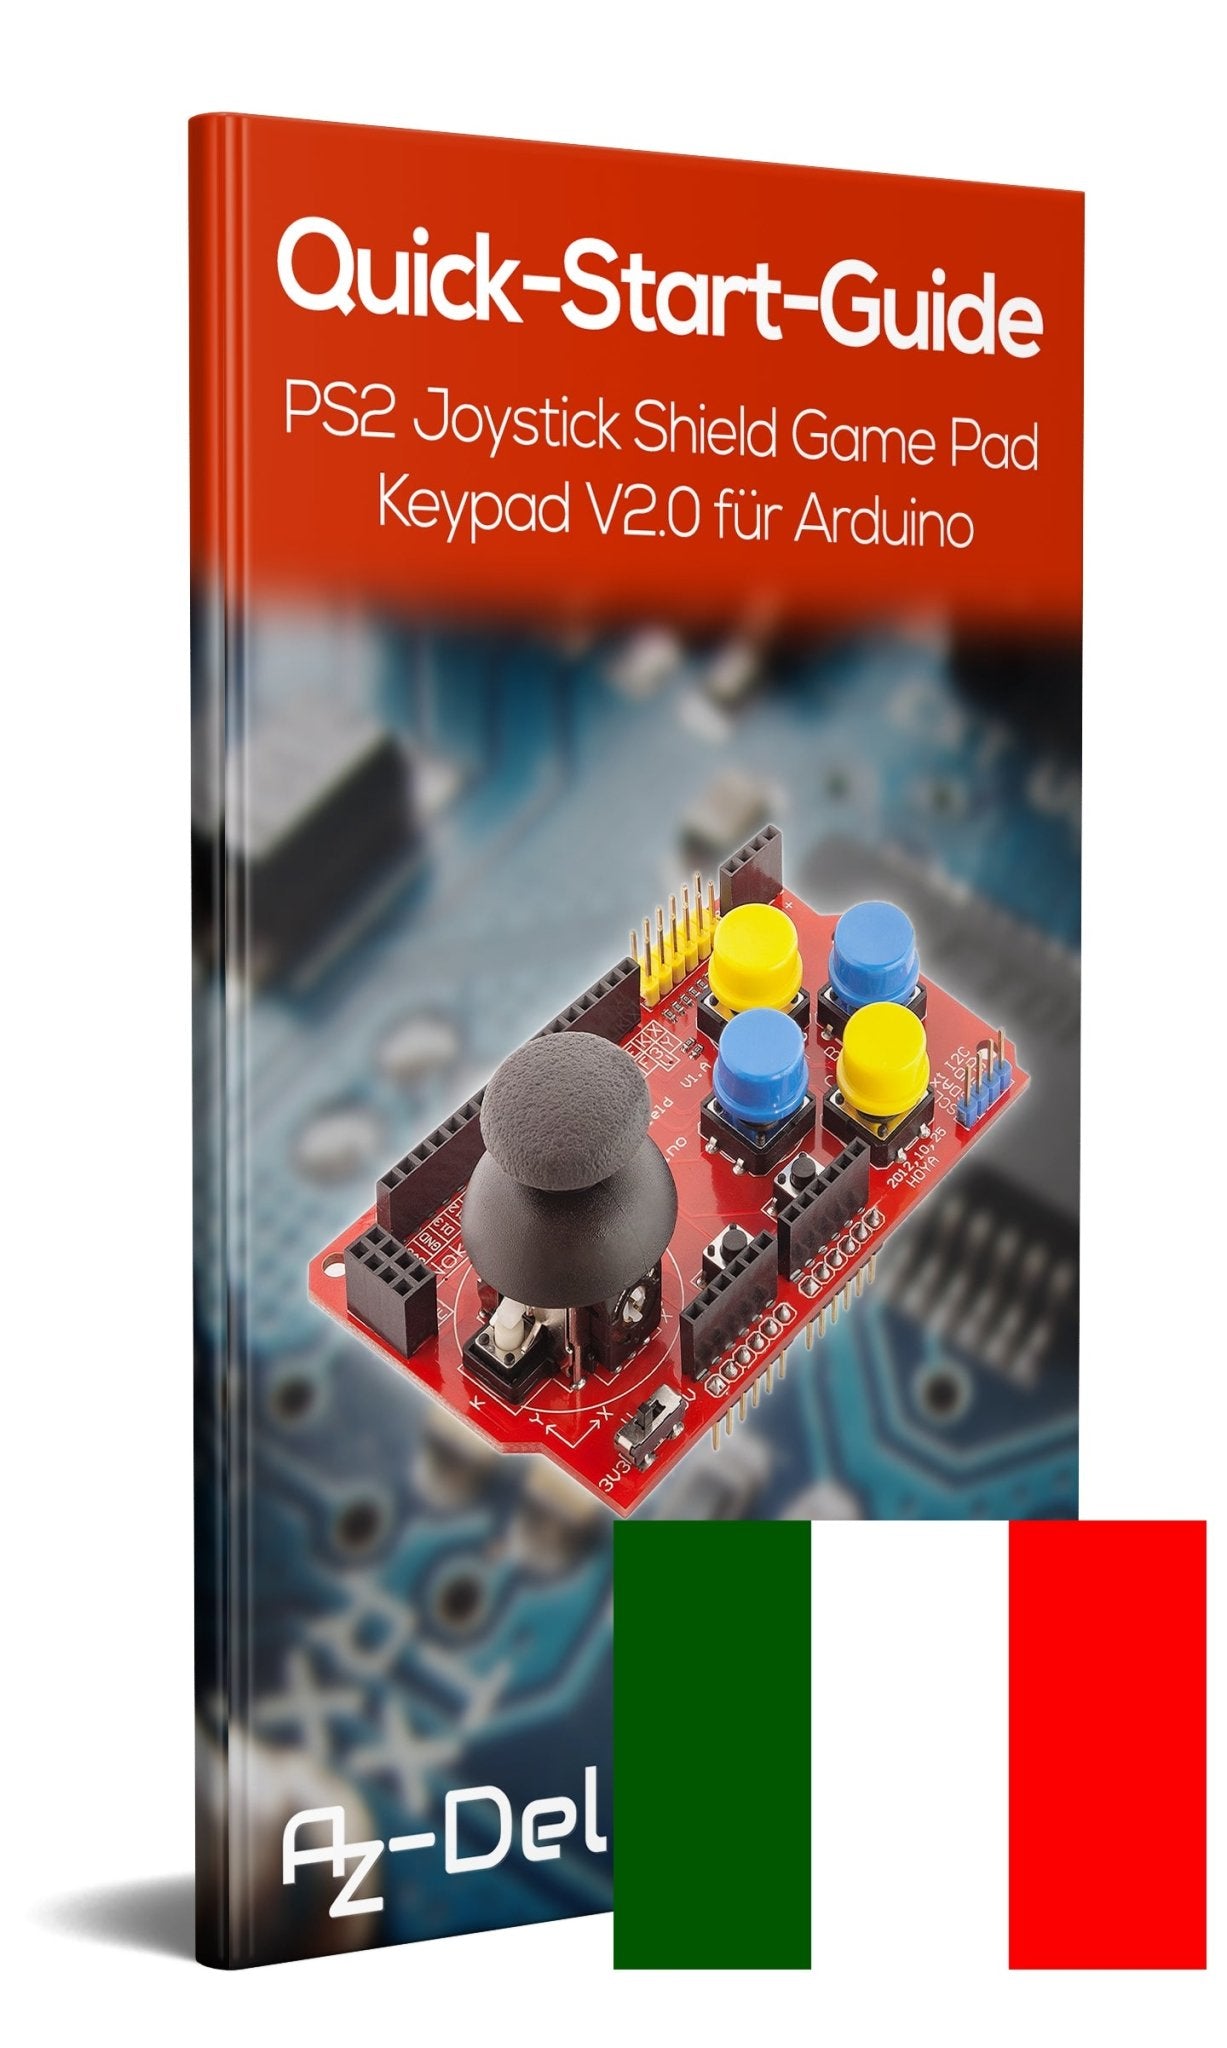 PS2 Joystick Shield Game Pad Keypad V2.0 - AZ-Delivery